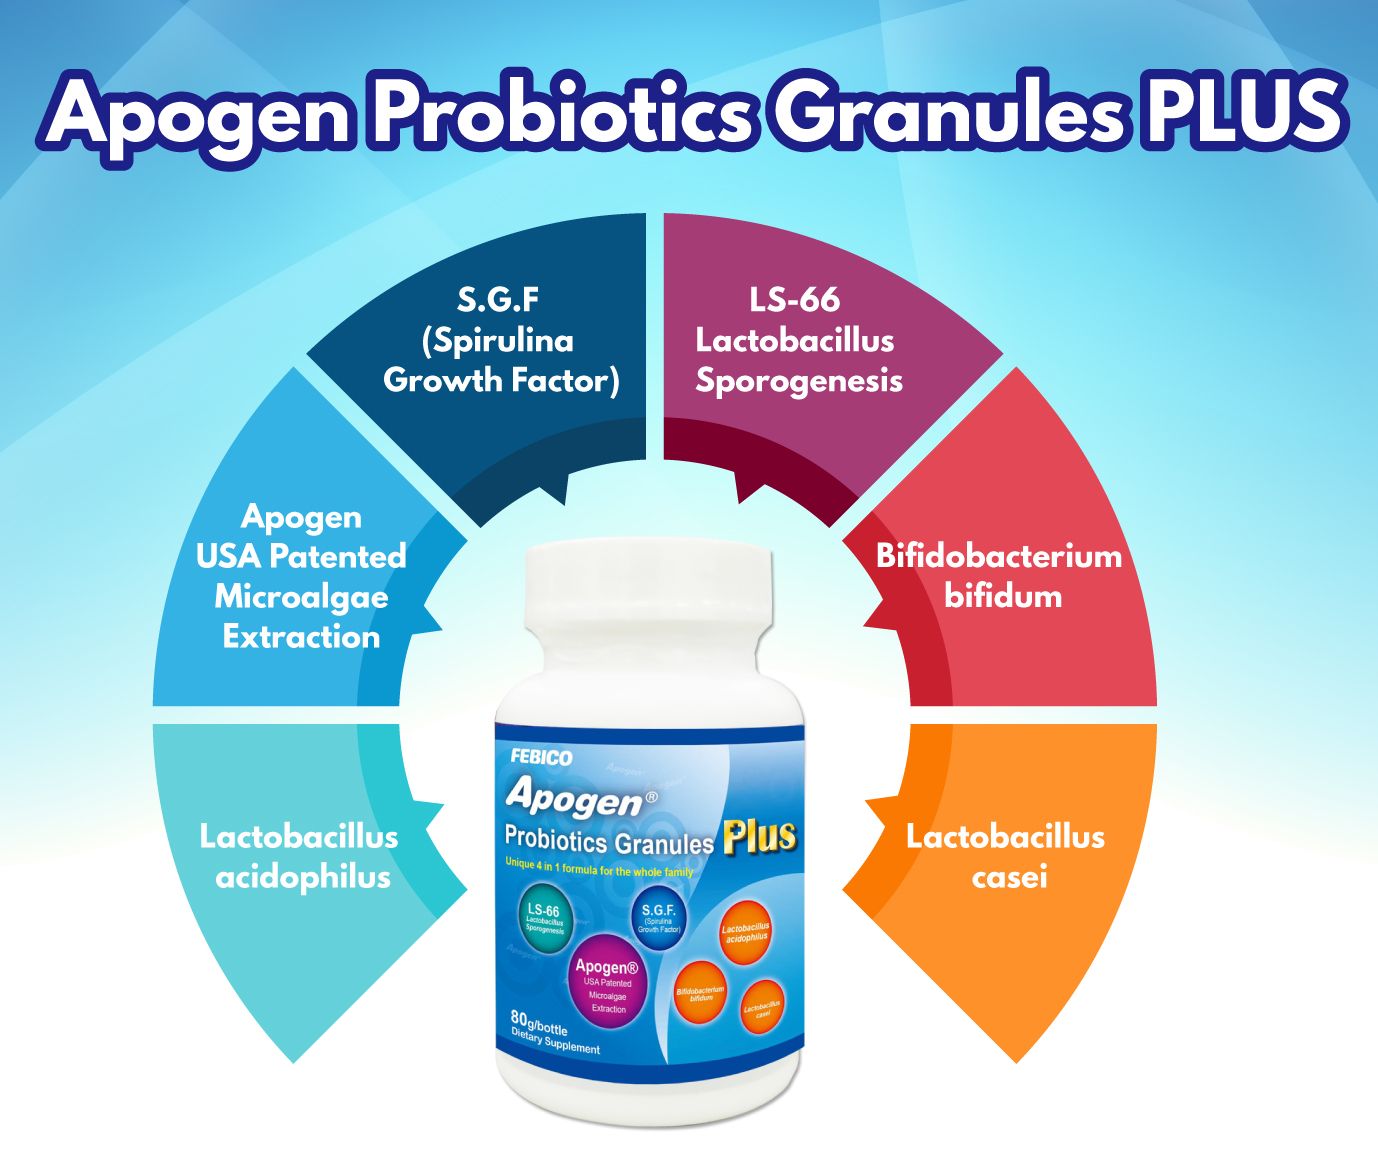 Apogen® Lactobacillus Sporogenes
ProbióticoMais - Apogen
ProbióticoLista de ingredientes